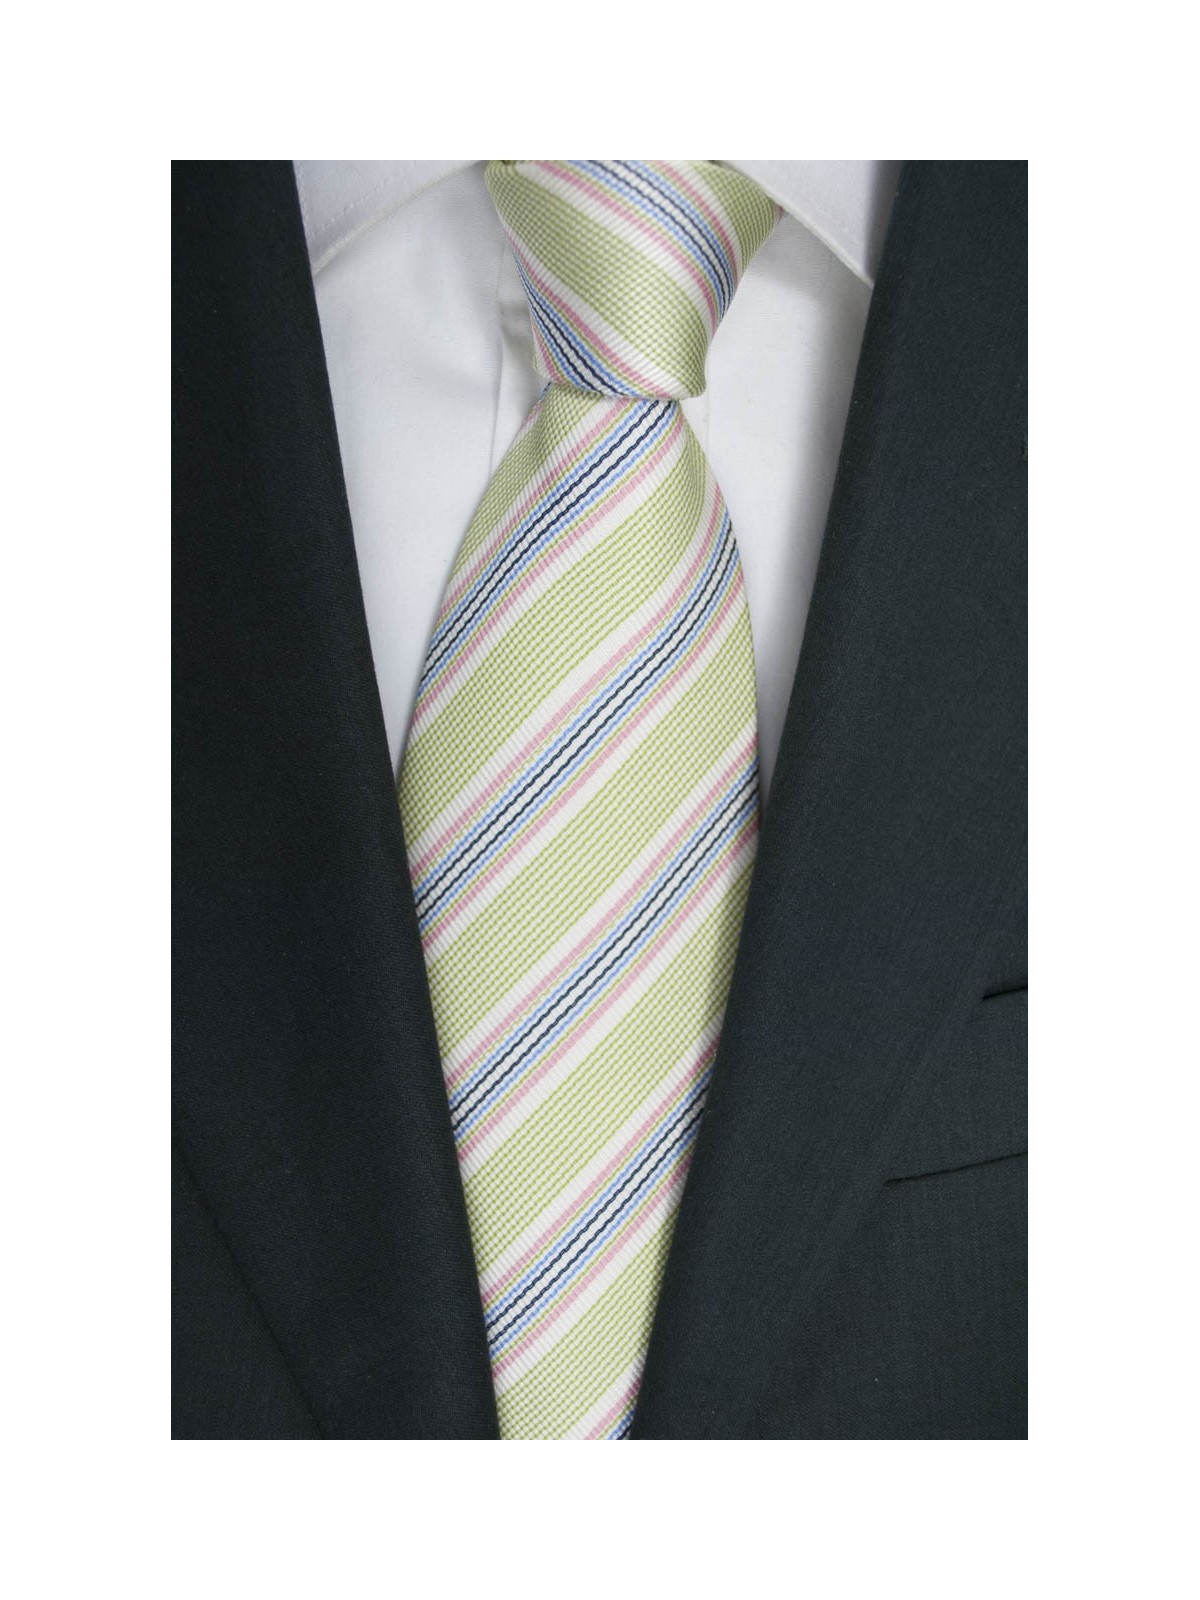 Corbata verde del Regimiento Multicolor -100% Pura Seda - Made in Italy